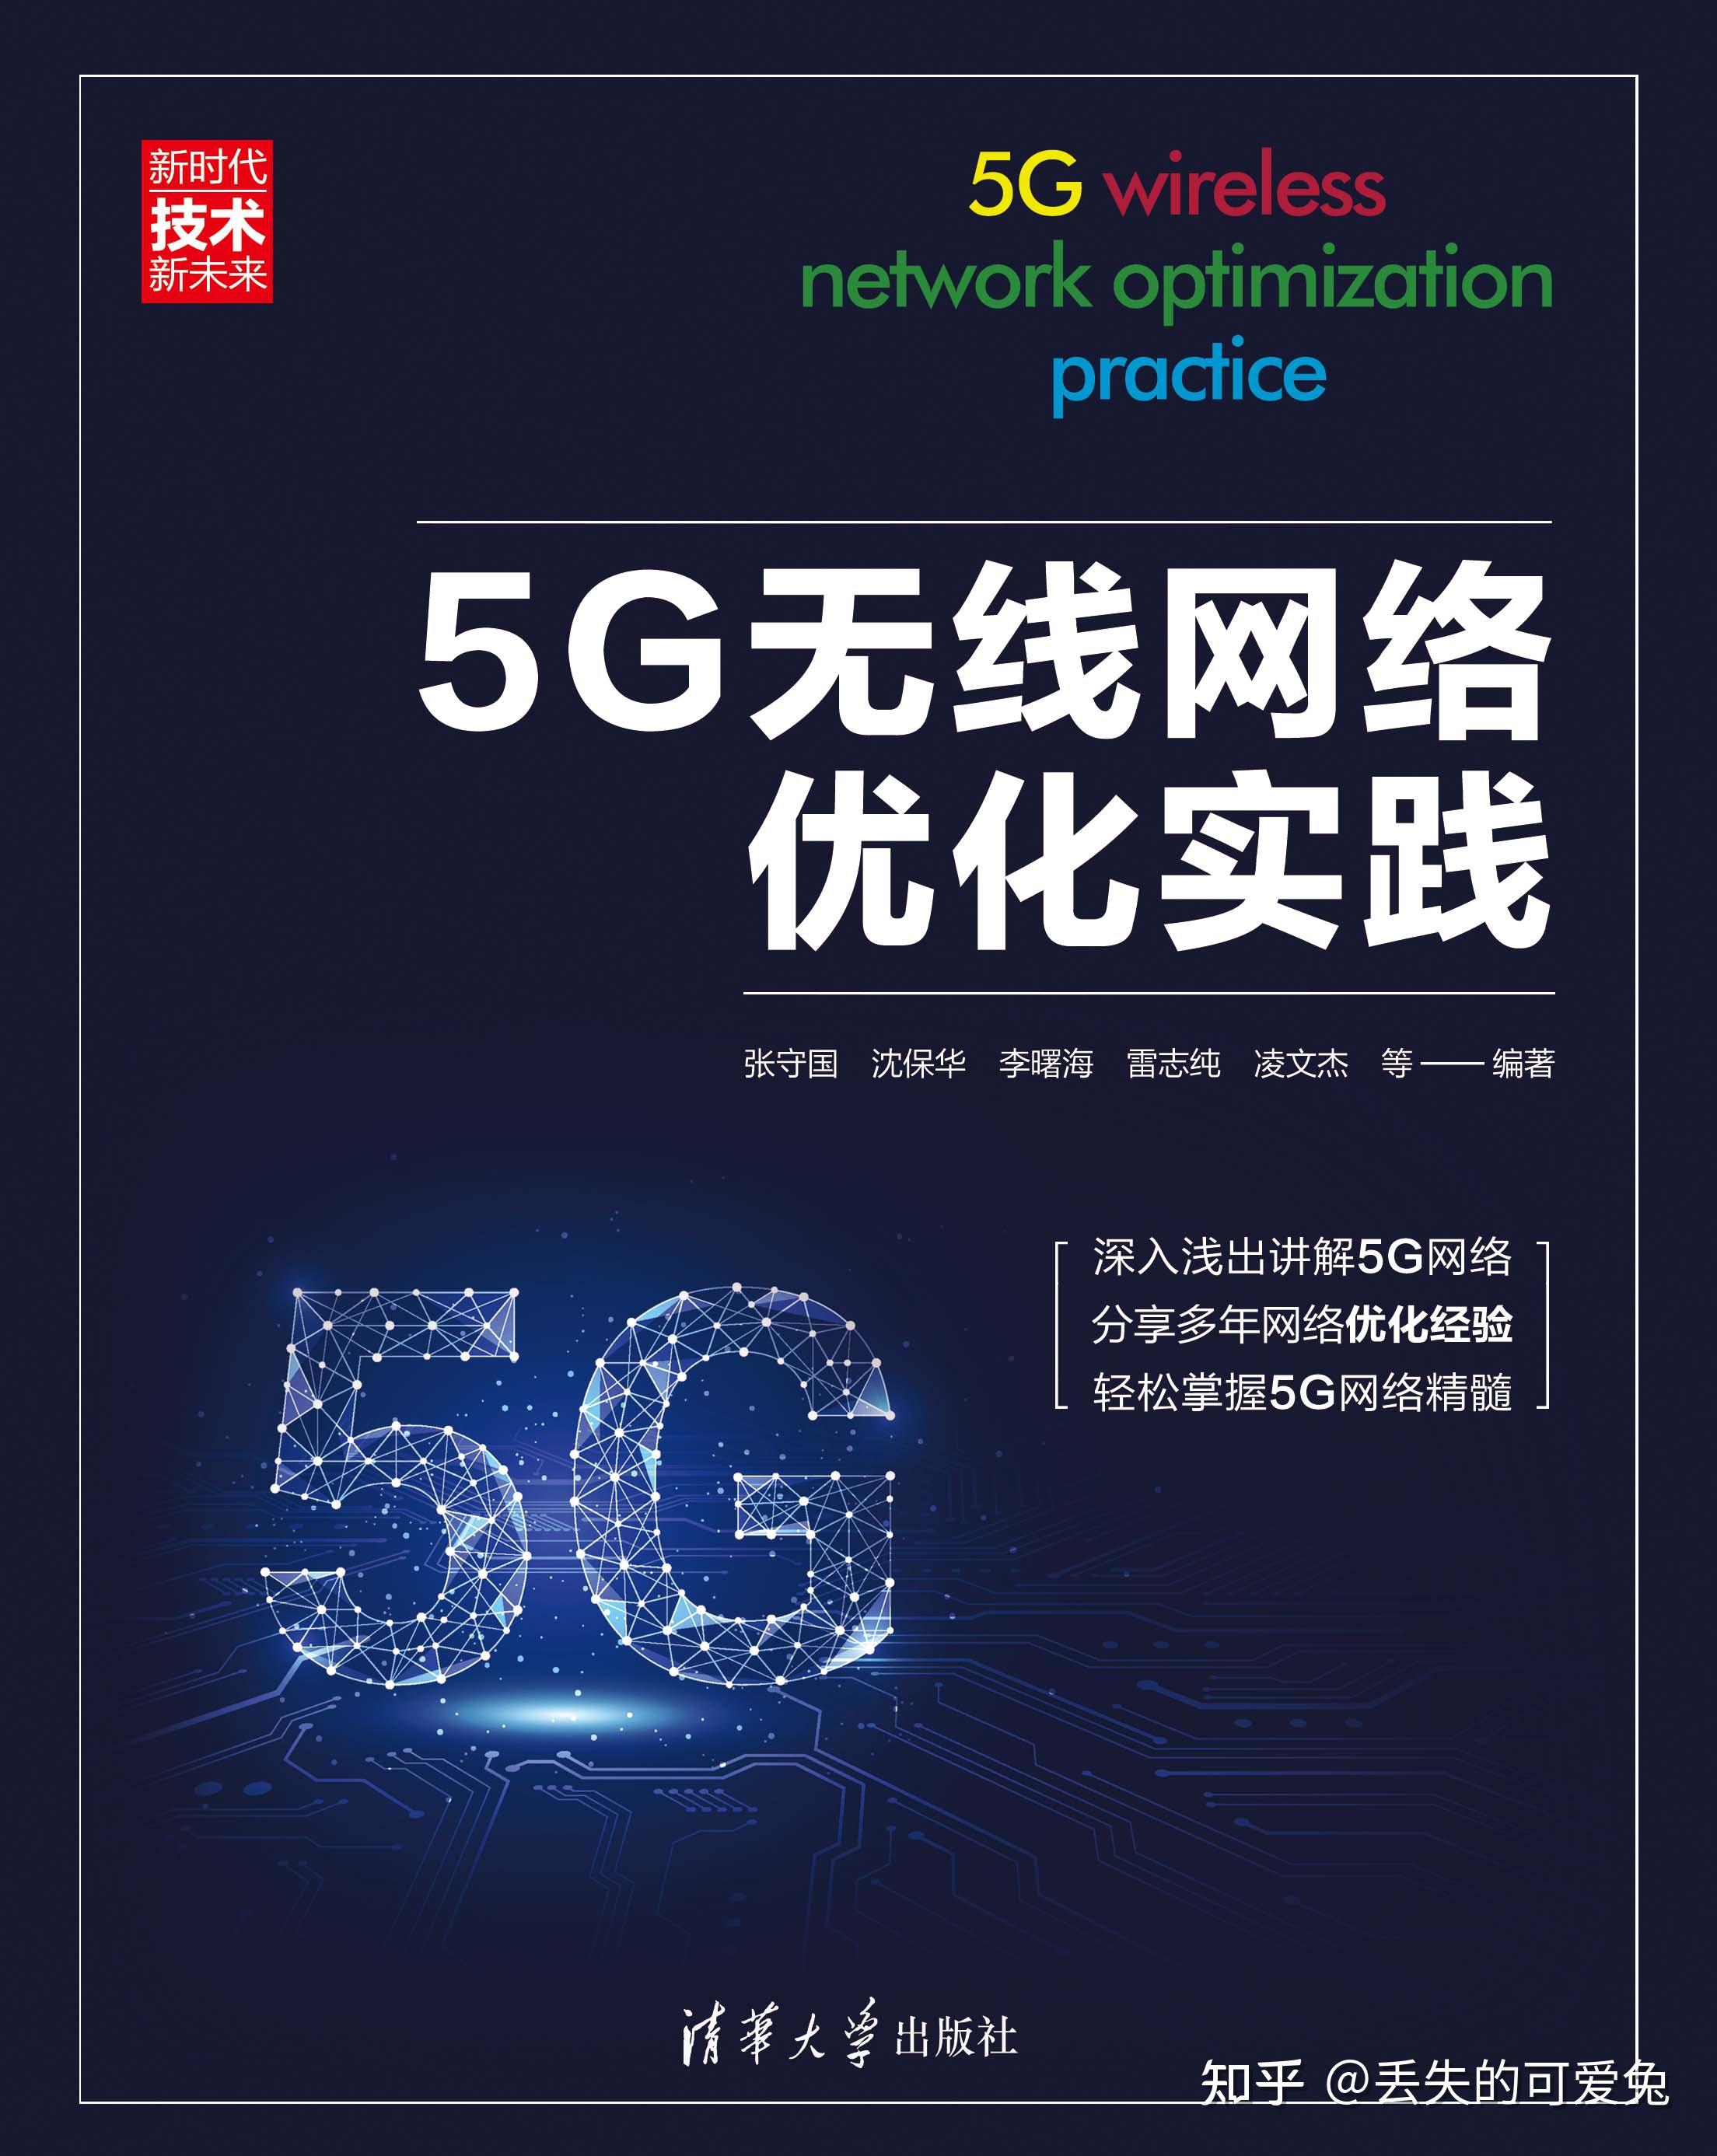 5G 网络虽带来便利，但作为热点使用却存在诸多问题  第8张